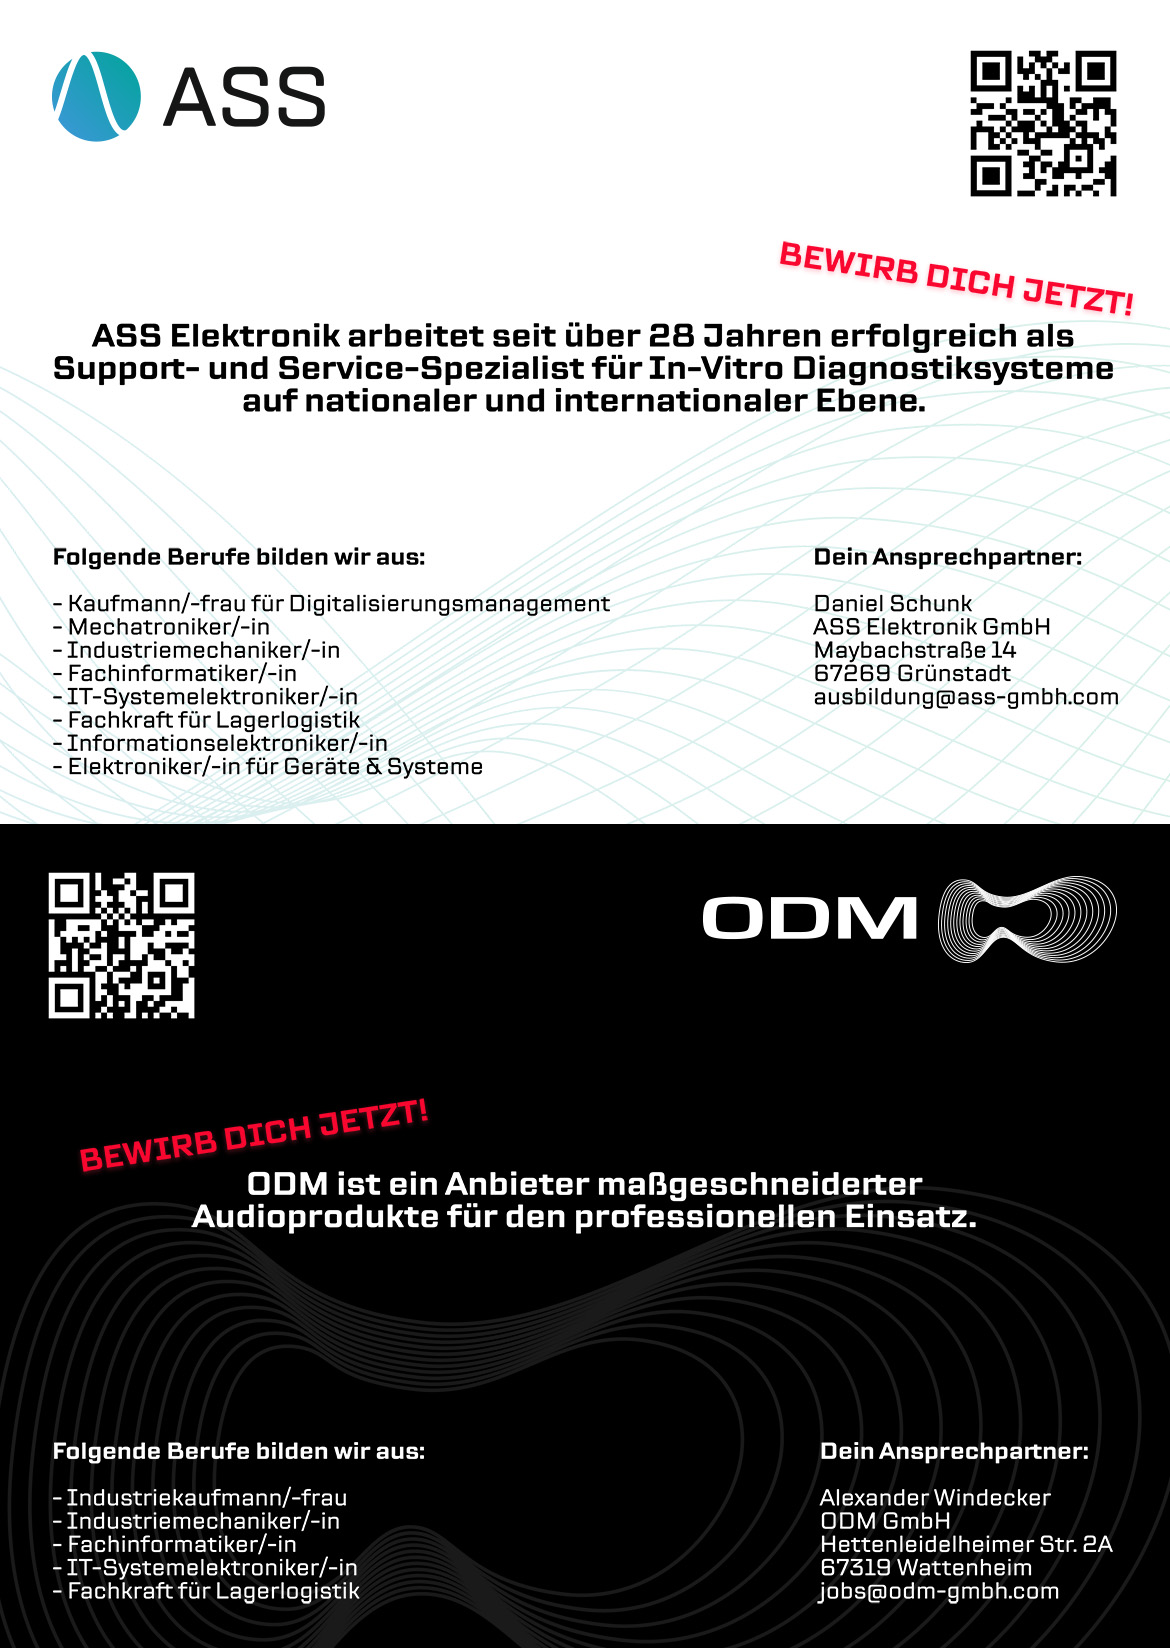 Ausbildungsplakat: ASS Elektronik GmbH